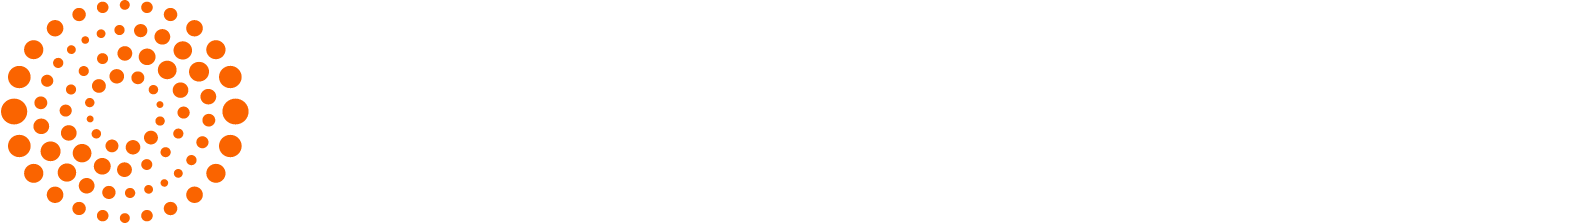 Thomson Reuters
 logo grand pour les fonds sombres (PNG transparent)